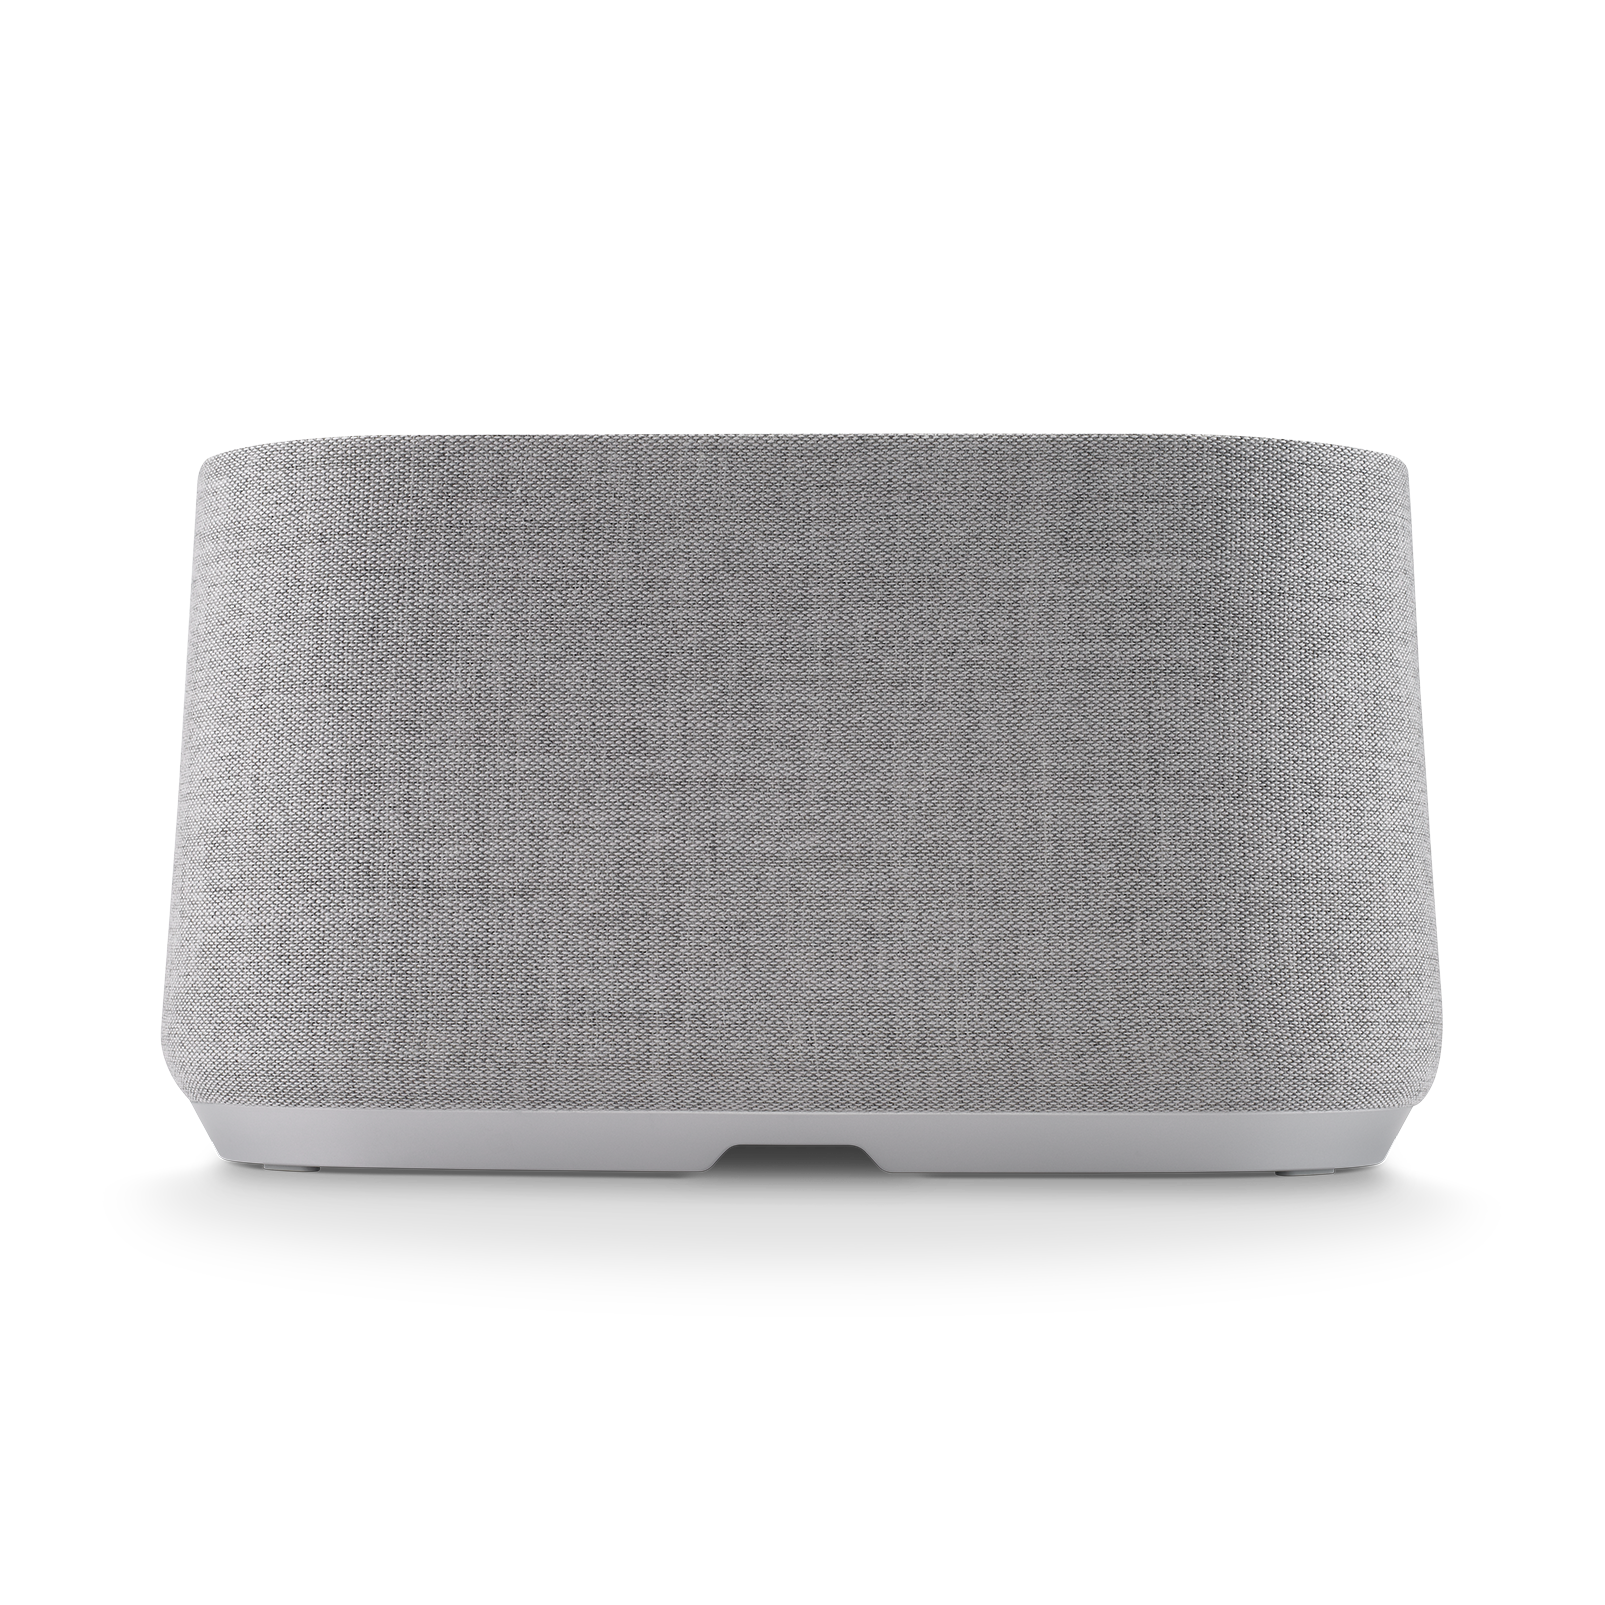 Harman Kardon Citation 500 - Grey - Large Tabletop Smart Home Loudspeaker System - Back